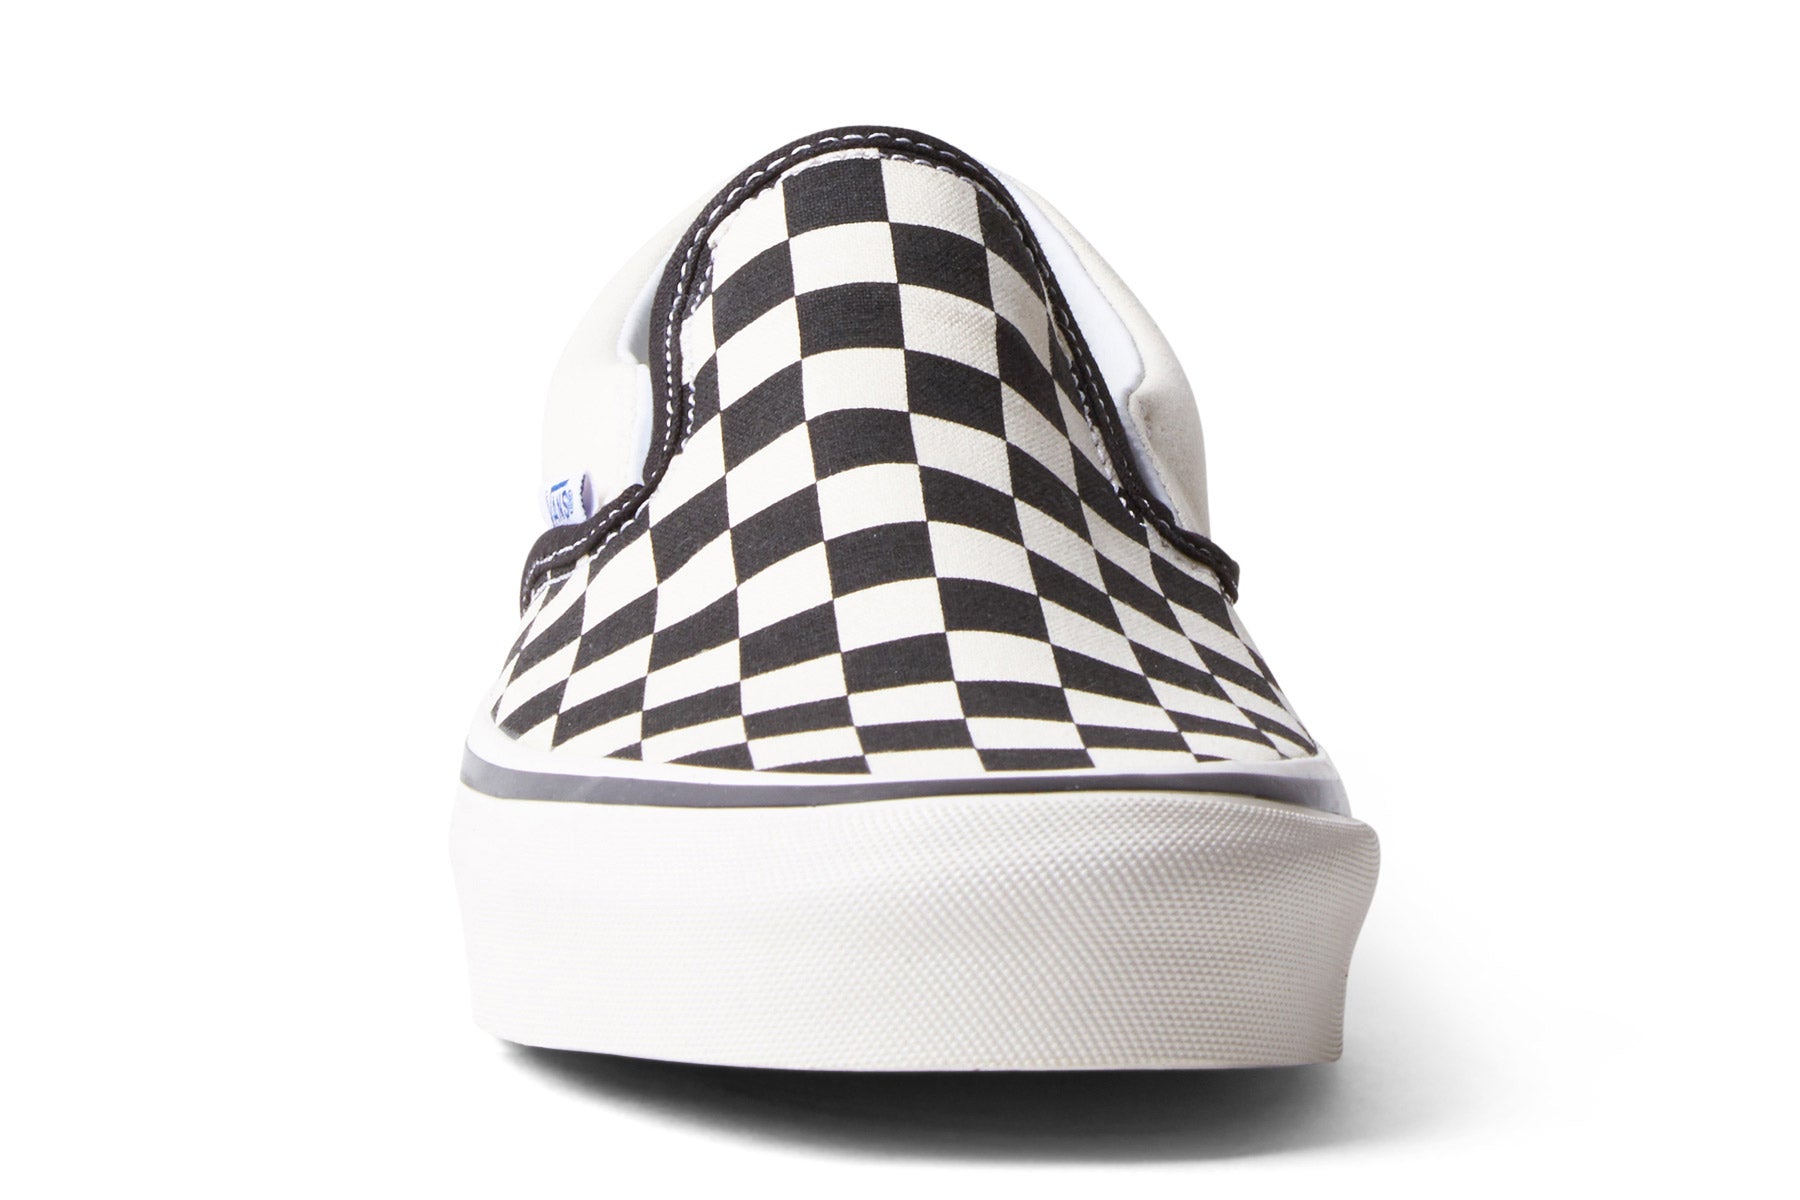 Vans Slip-On 98 DX Checkerboard (Anaheim) - Black / White